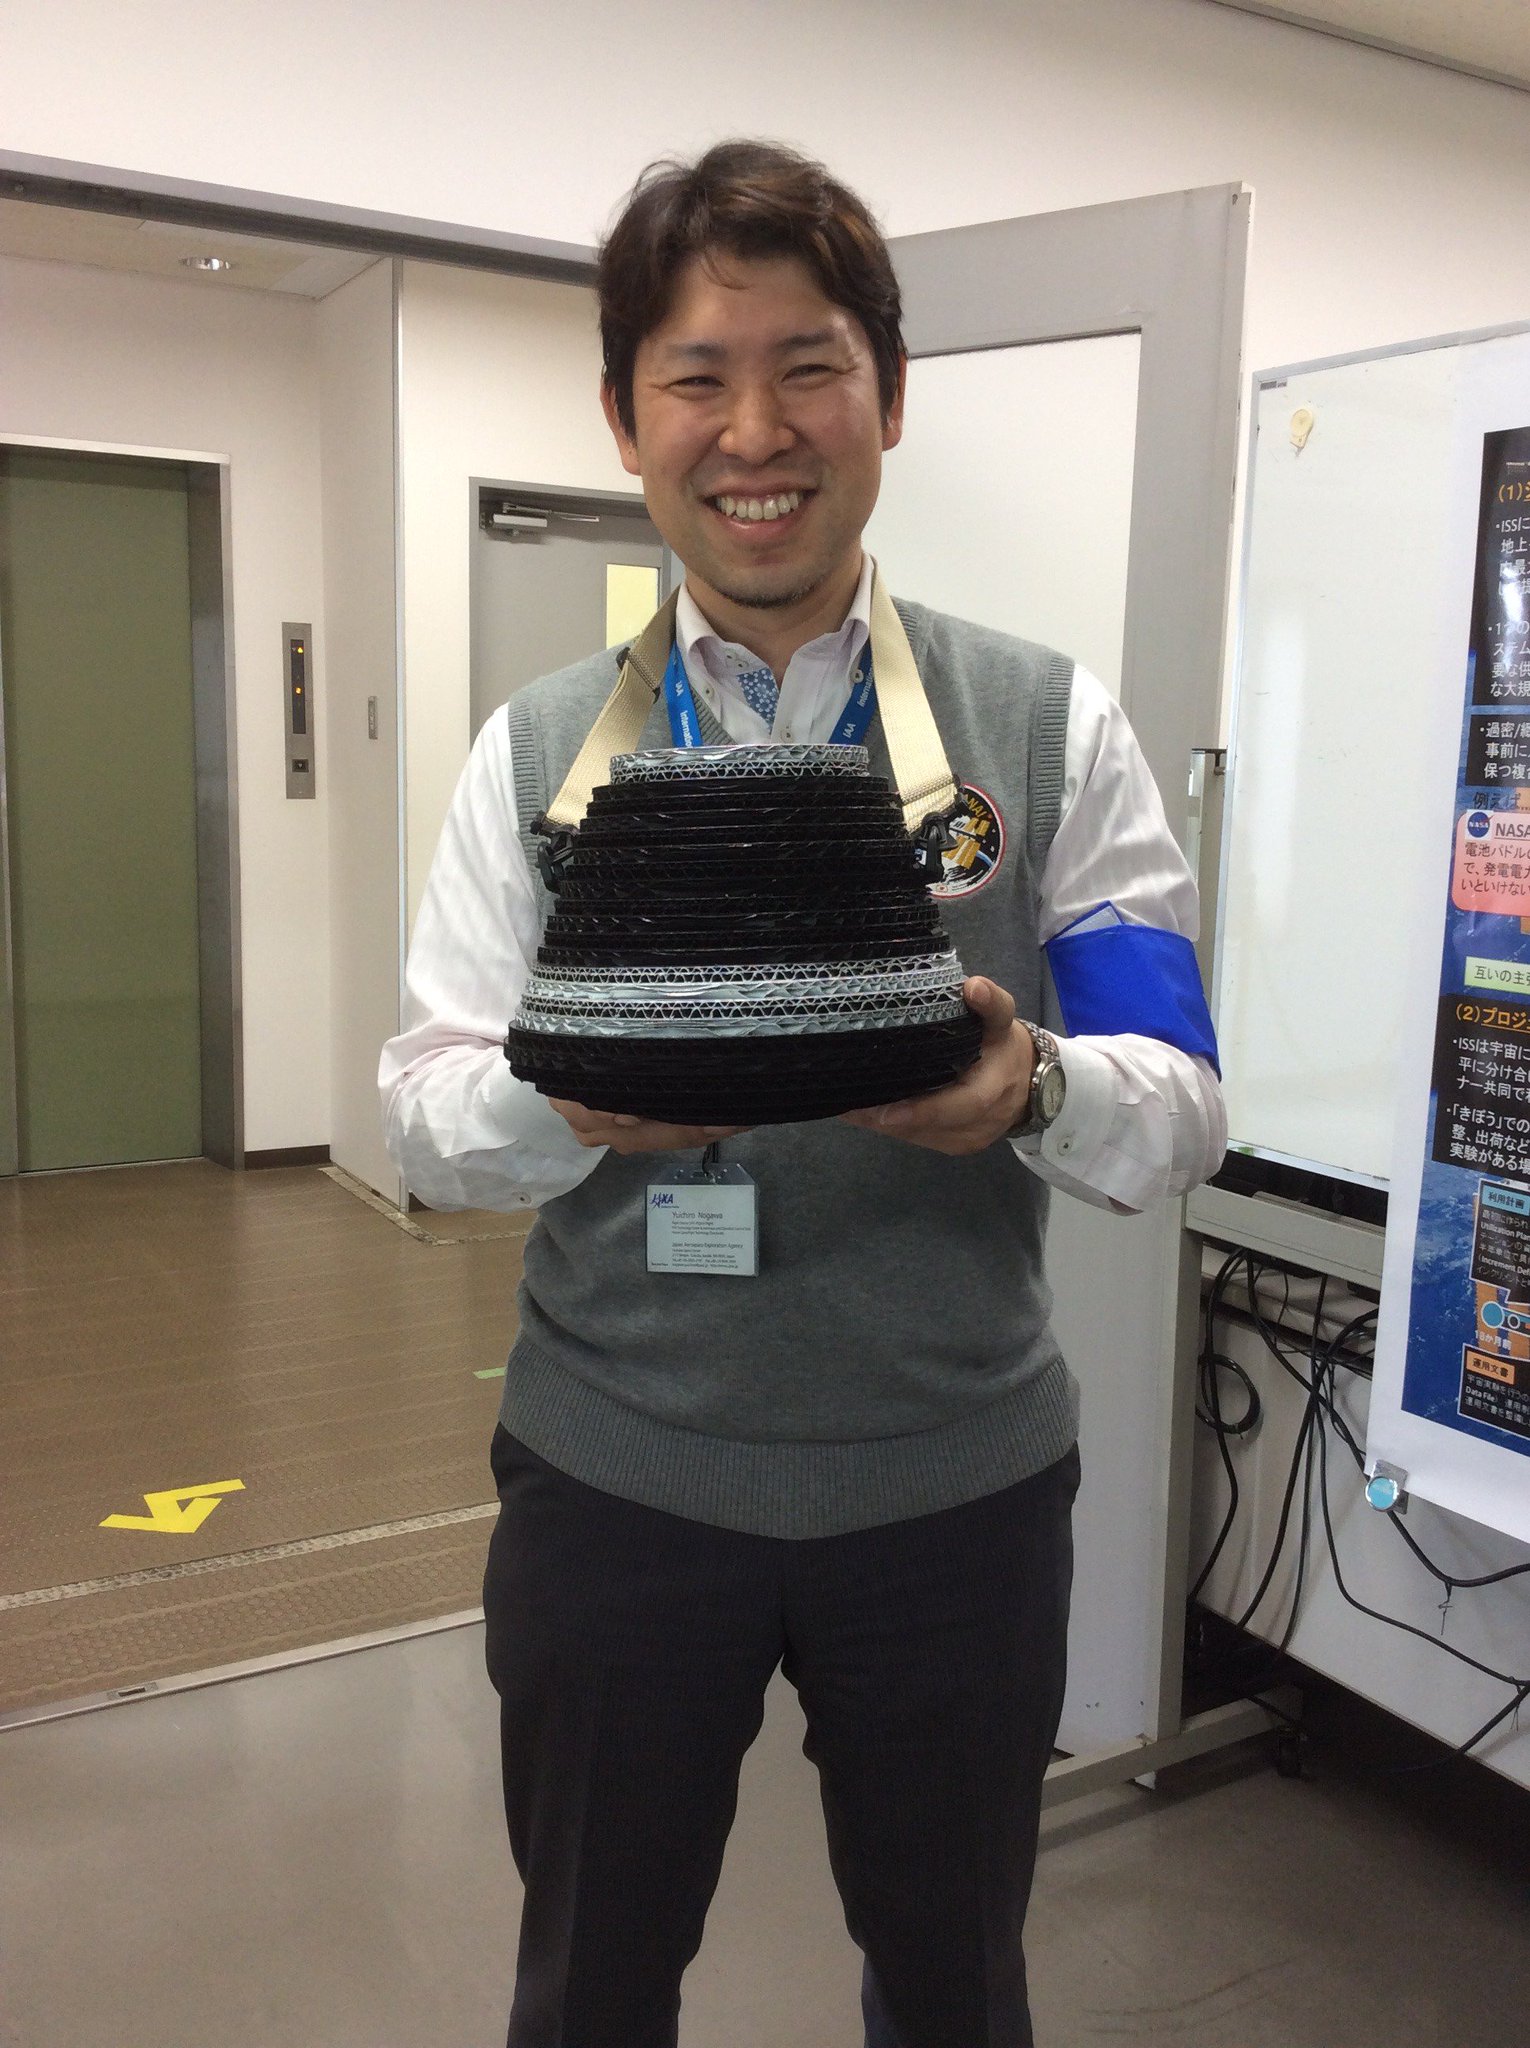 JAXAきぼうフライトディレクタ on Twitter: "9/29に開催された #筑波宇宙センター 特別公開では、自作の #こうのとり 7号